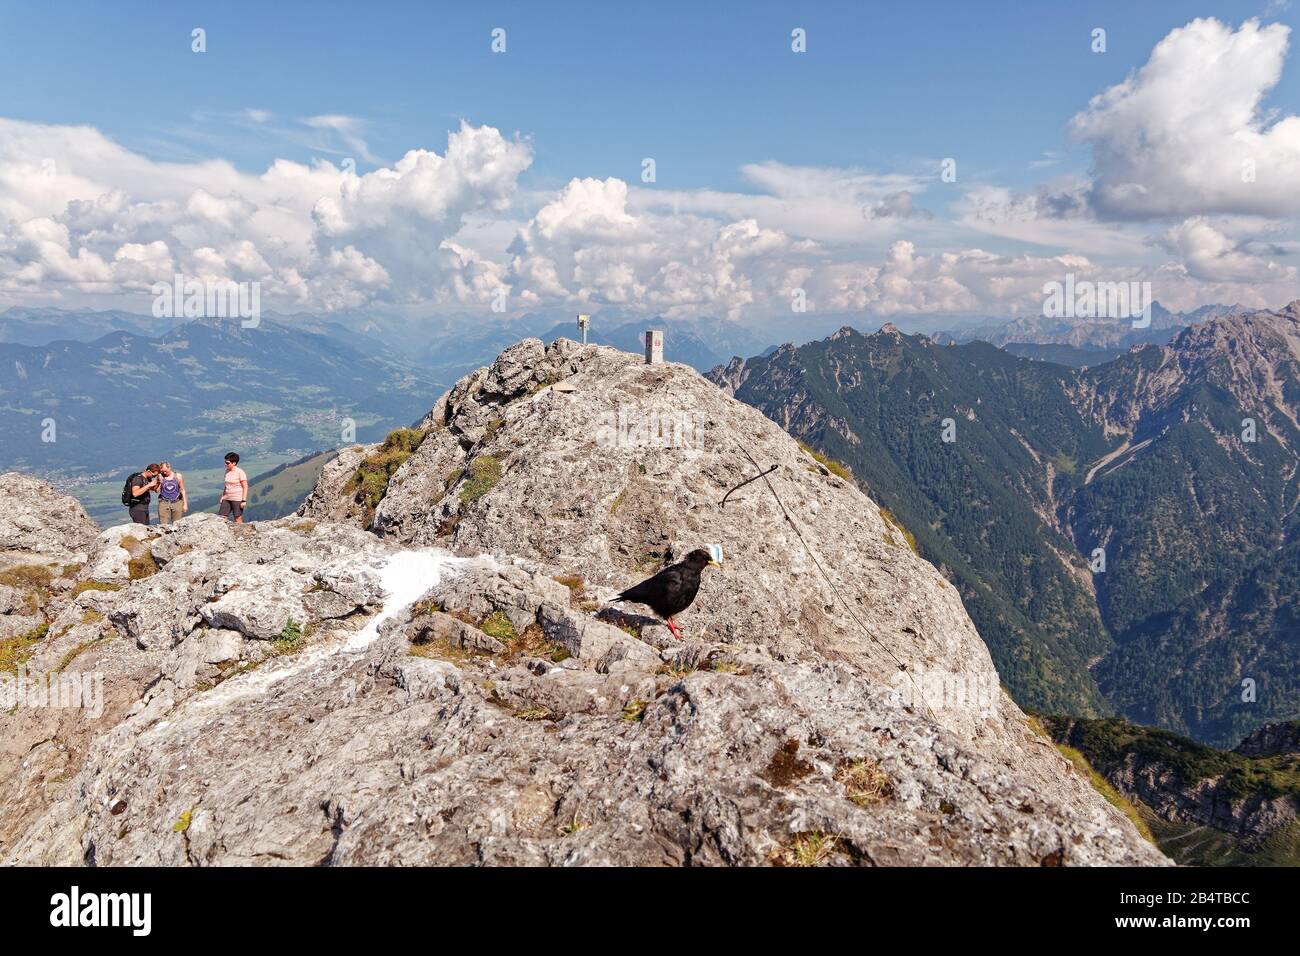 Drei Schwestern, Vorarlberg, Austria - August 25, 2019: Bird and tourists at summit of Drei Schwestern (The Three Sisters ) with views of Rhine Valley Stock Photo